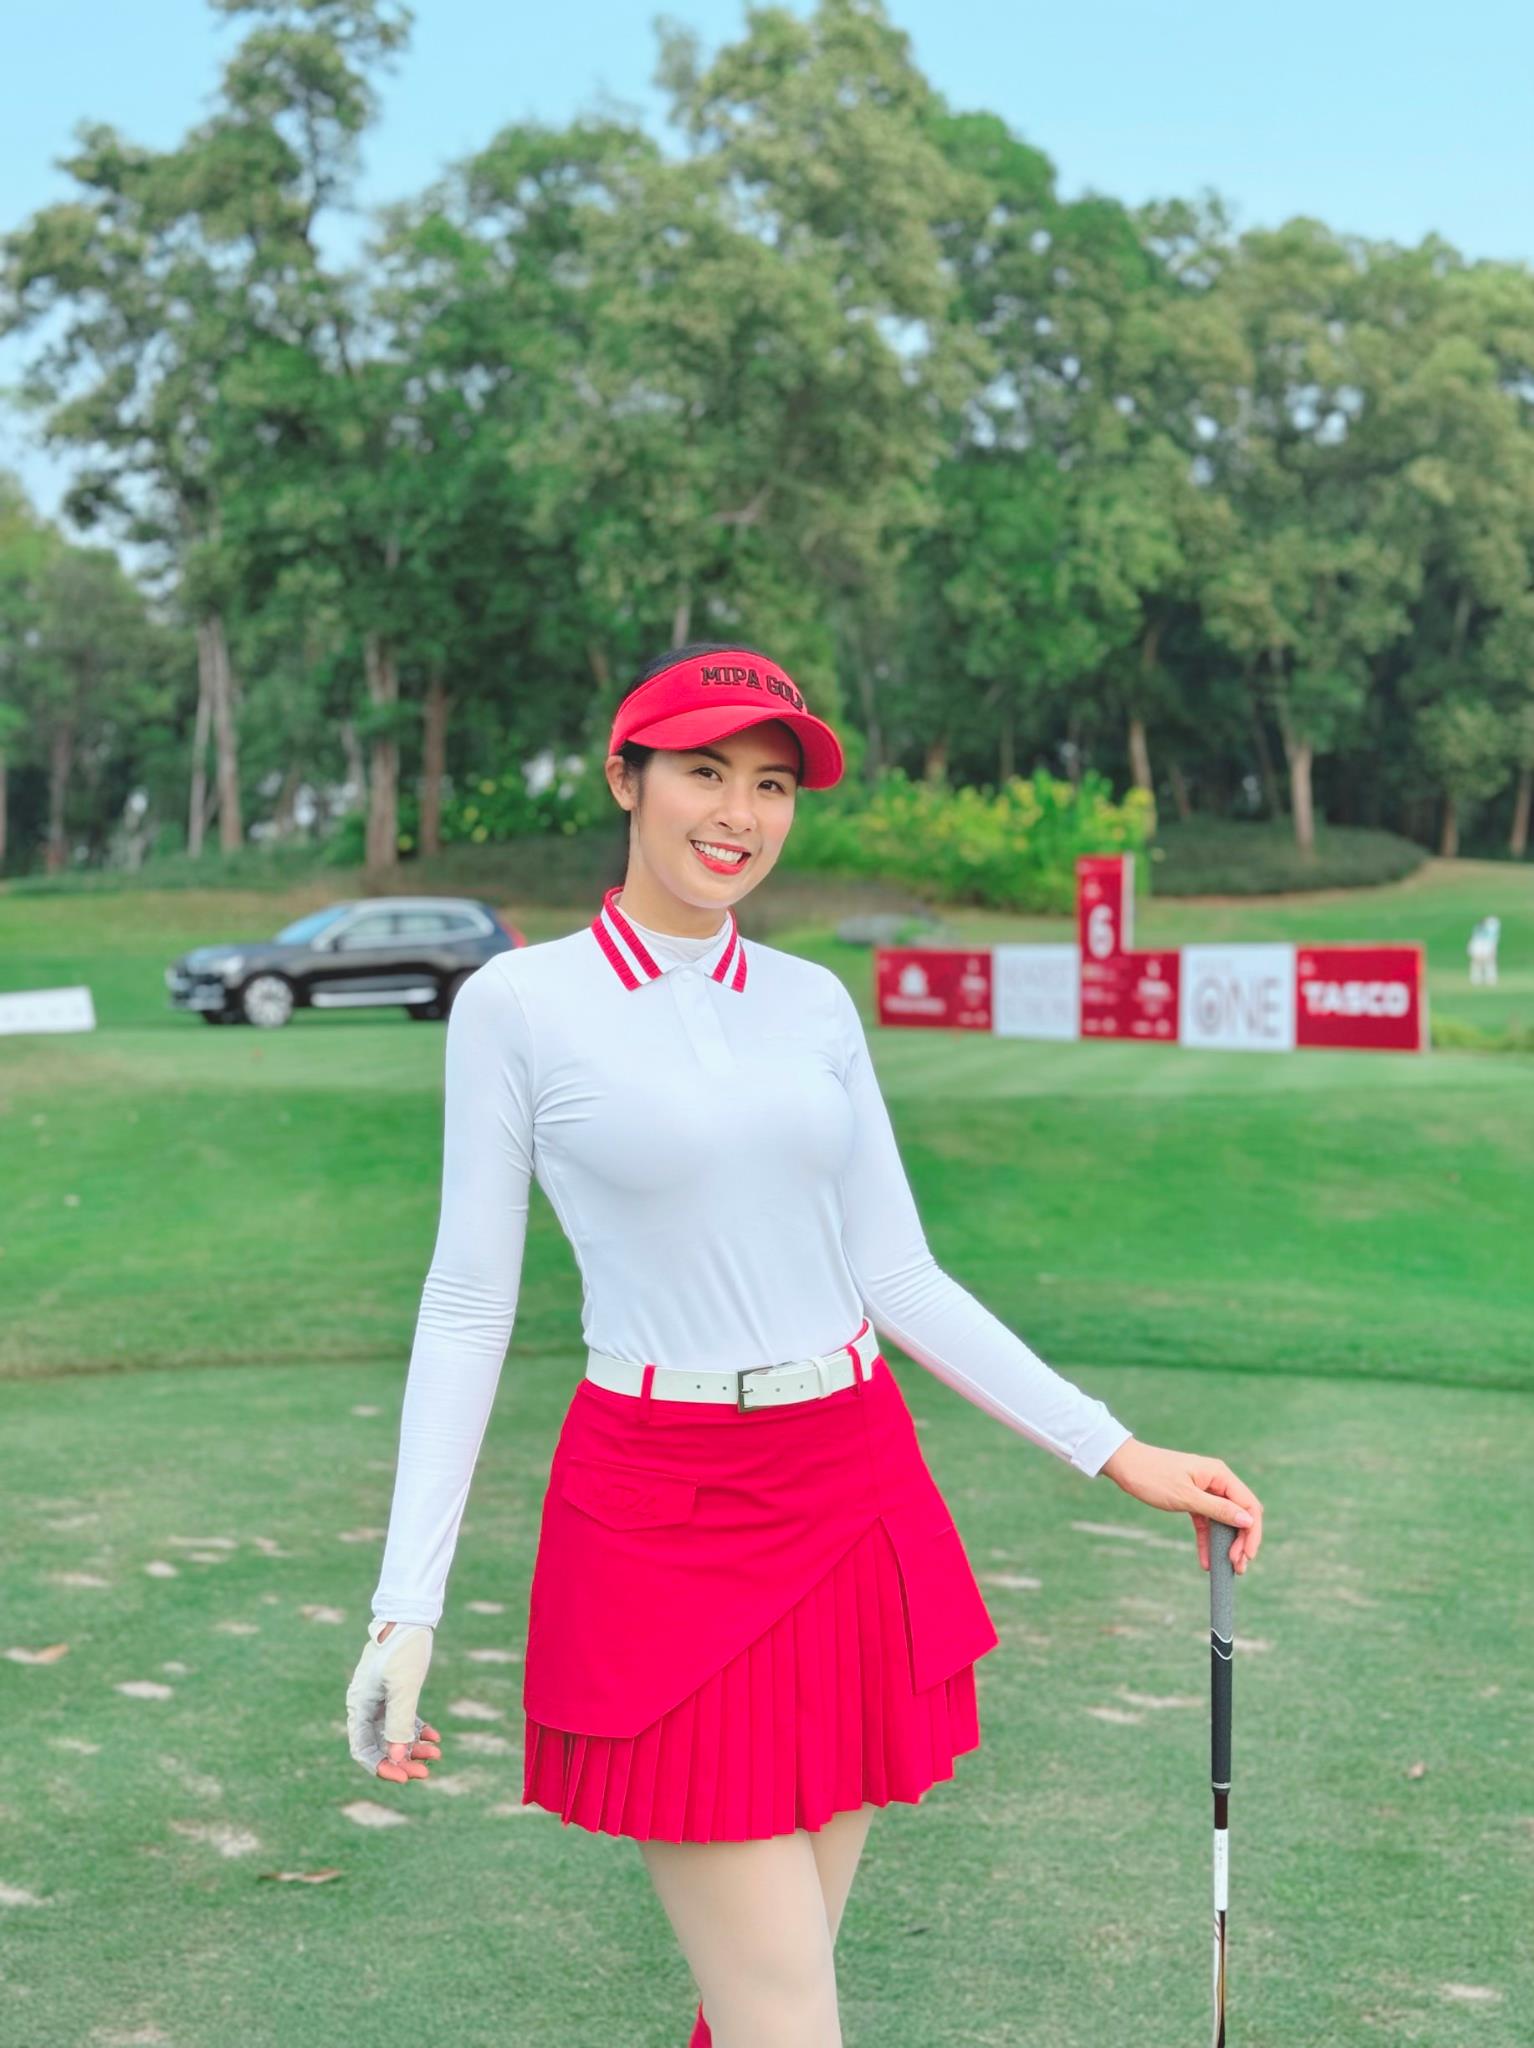 MIPA Golf gây sốt với bộ sưu tập mới, được hàng loạt Hoa hậu, người nổi tiếng yêu thích - Ảnh 2.